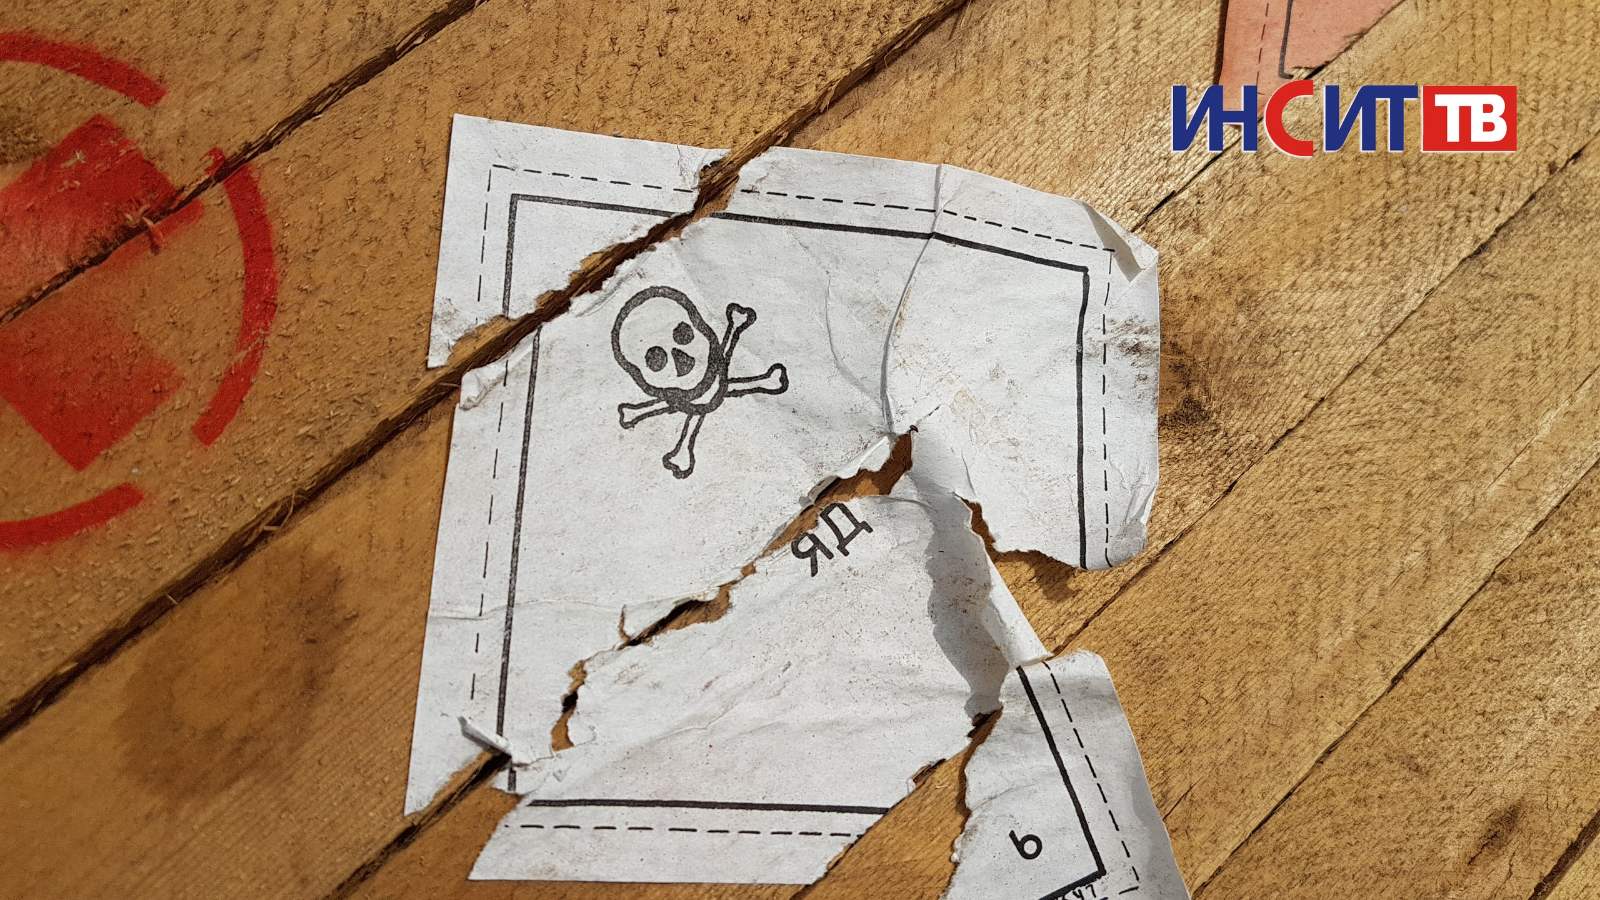 В найденных в Копейске ящиках с надписью «Яд» оказалось дезинфицирующее средство